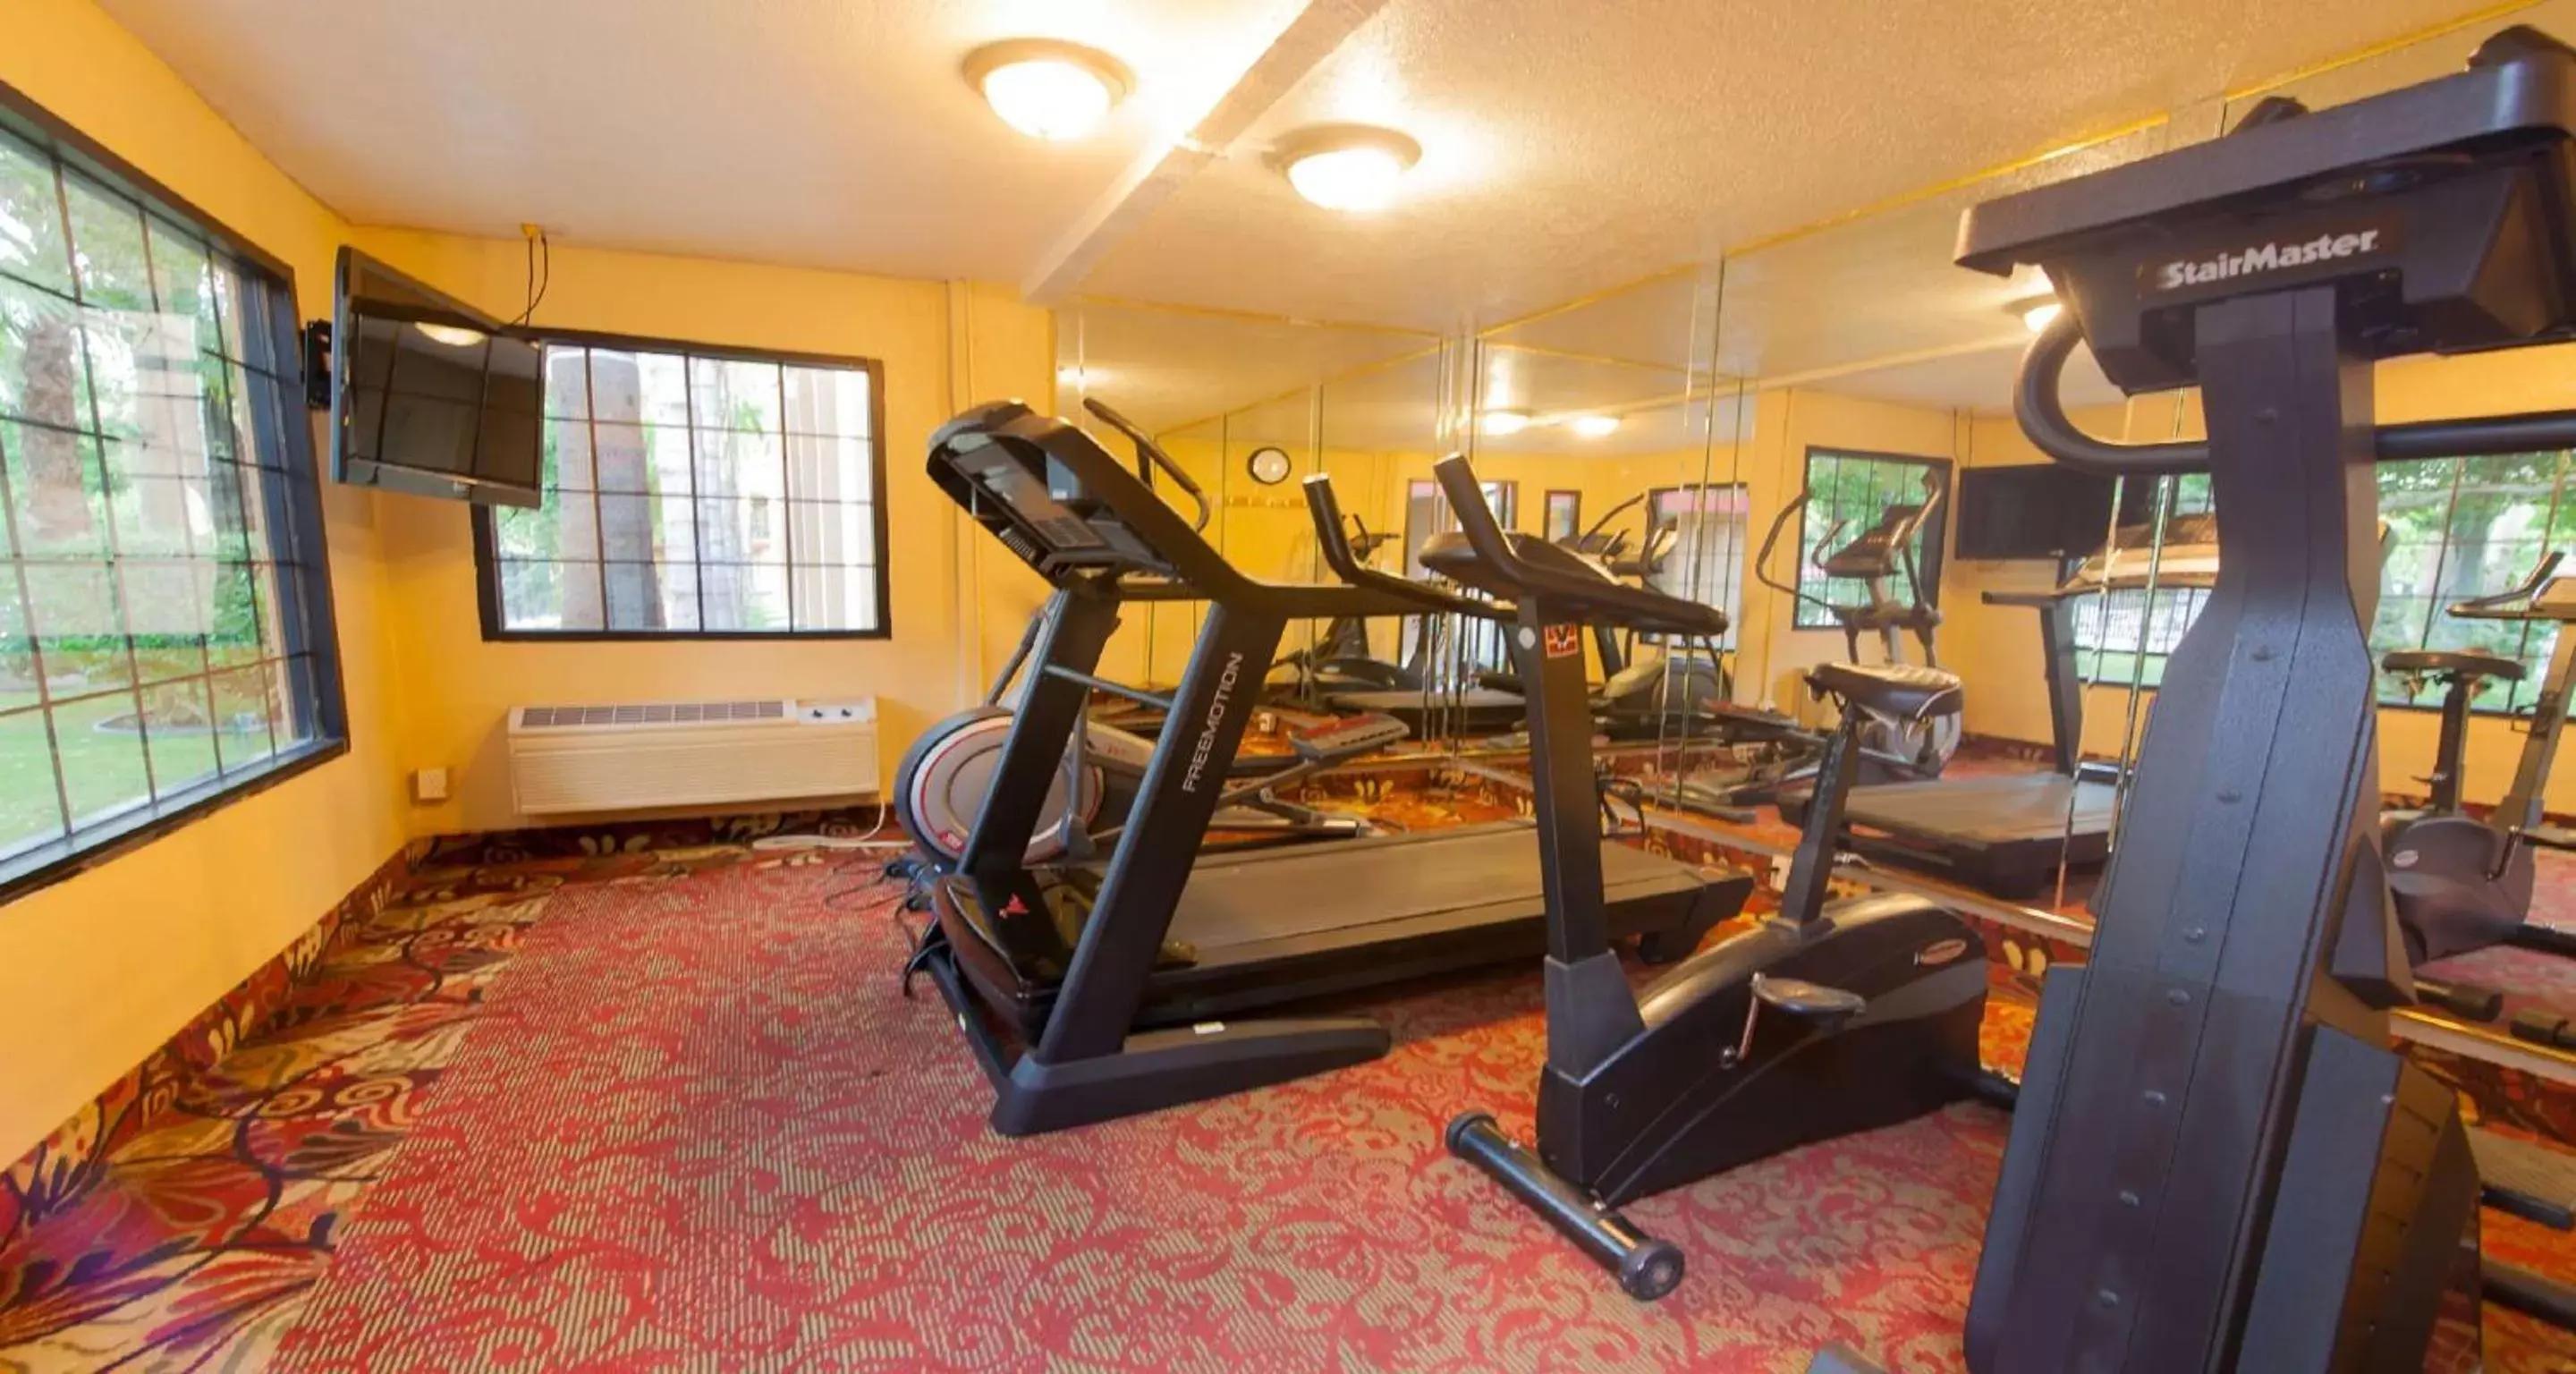 Fitness centre/facilities, Fitness Center/Facilities in Duniya Hotel